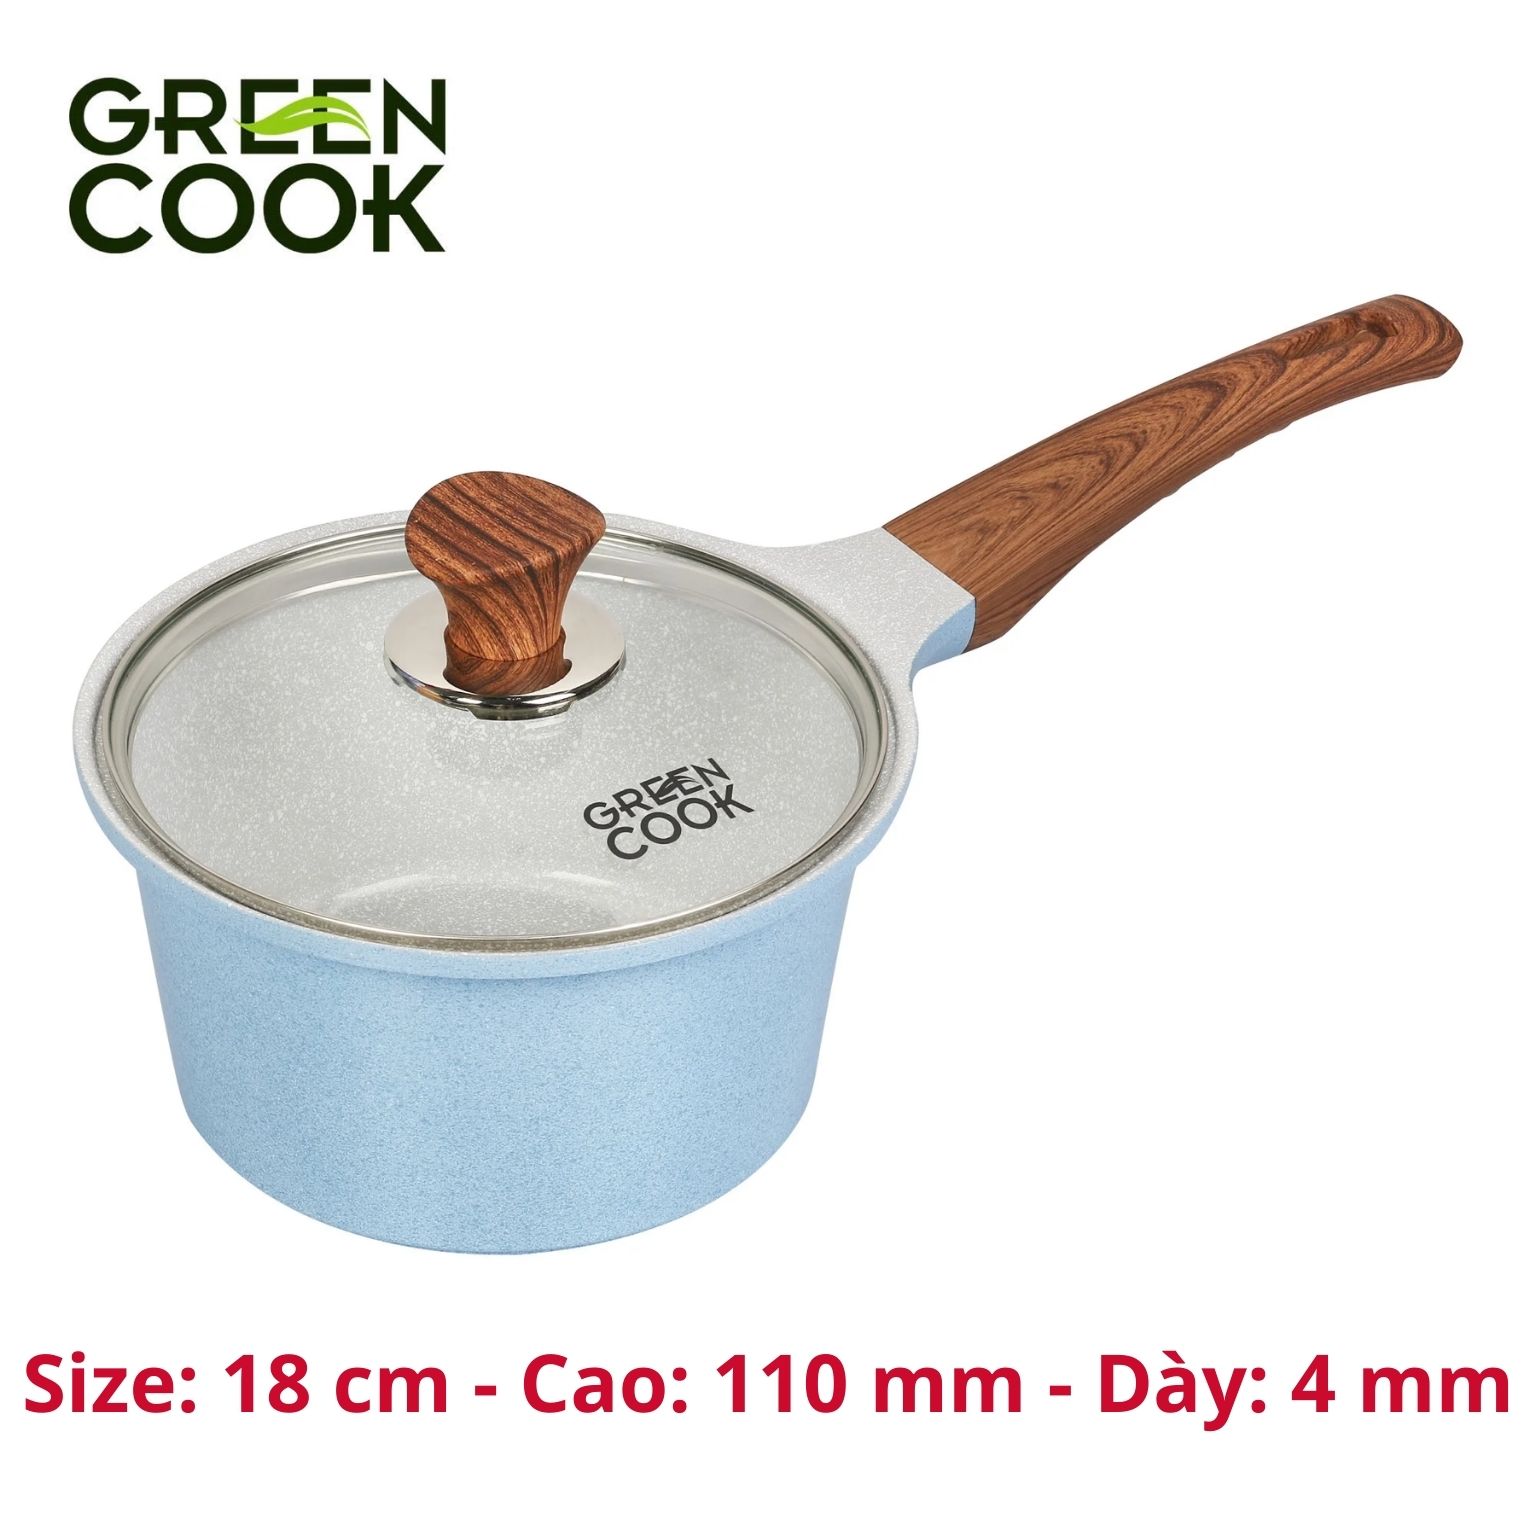 Nồi đúc bếp từ men đá chống dính xanh sapphire Green Cook GCS09-IH công nghệ Hàn Quốc - Hàng chính hãng